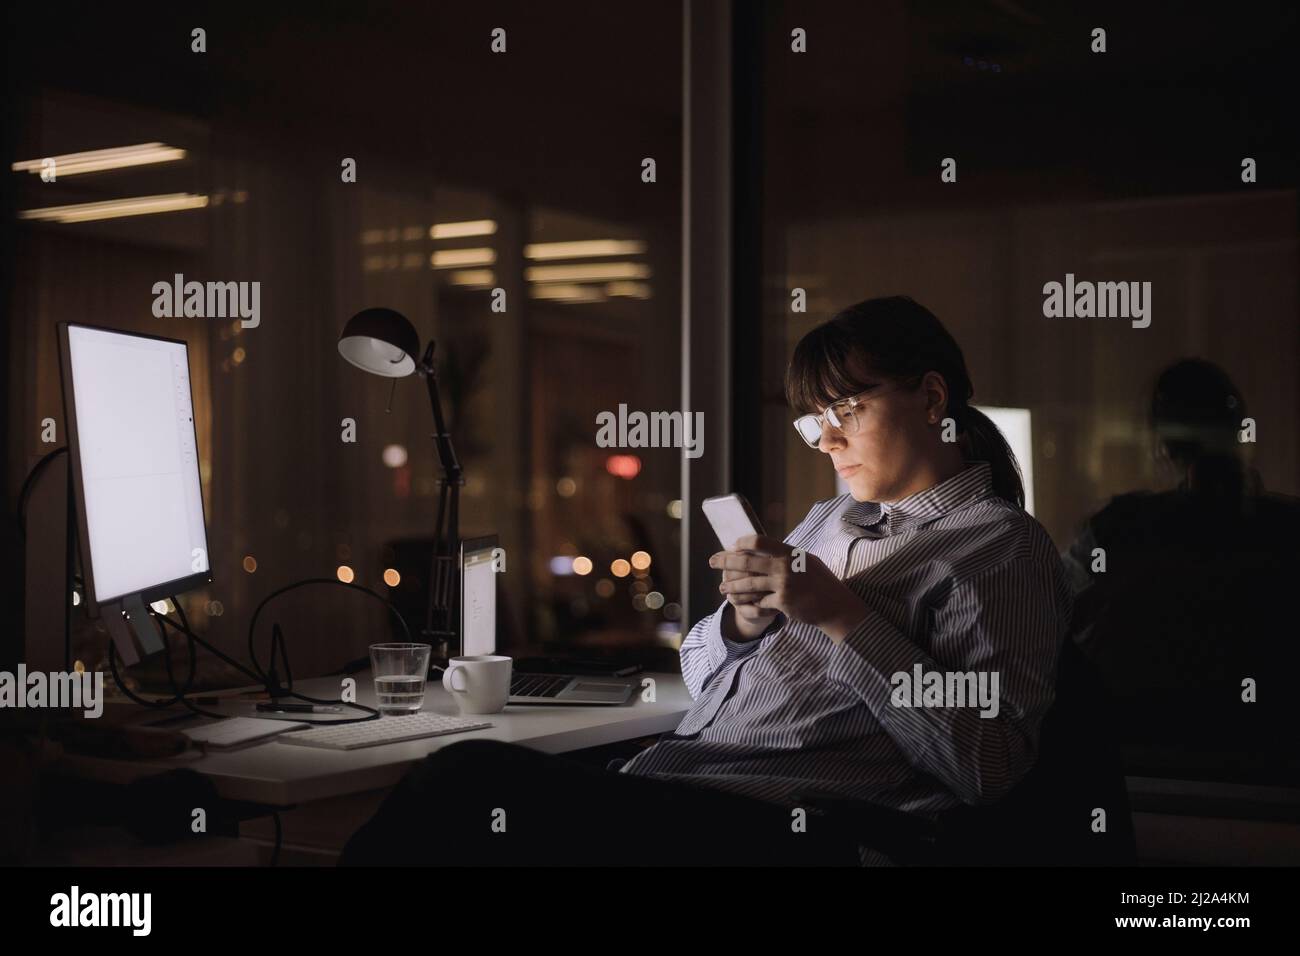 Messagerie texte femme d'affaires sur smartphone assis au travail Banque D'Images